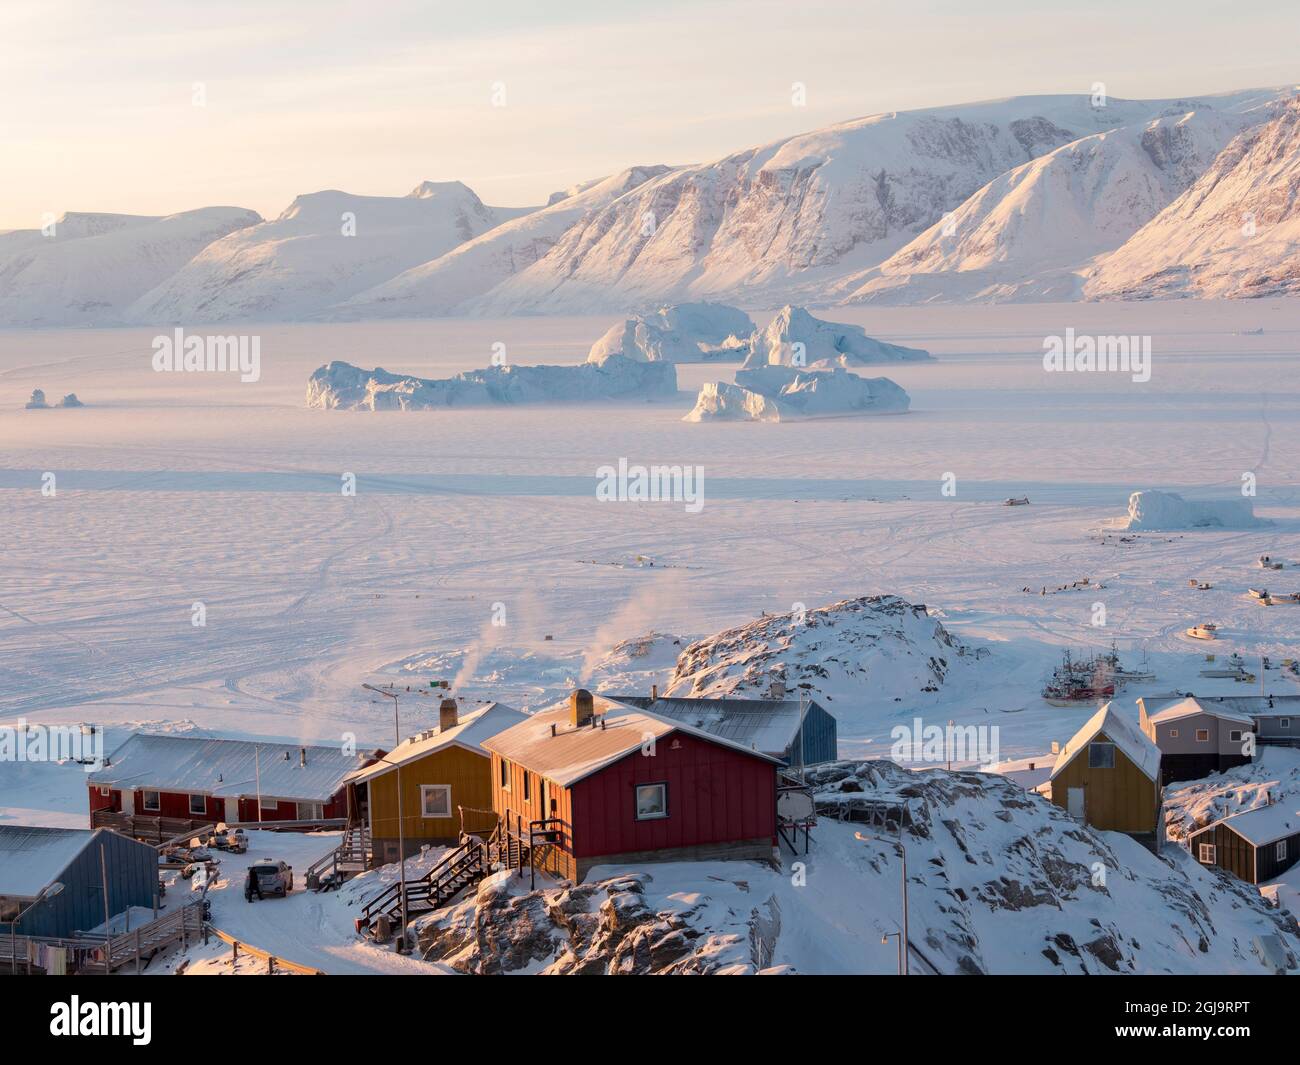 Ville d'Uummannaq pendant l'hiver dans le nord du Groenland. Le contexte est la péninsule de Nusssuaq (Nugssuaq). Danemark, Groenland Banque D'Images